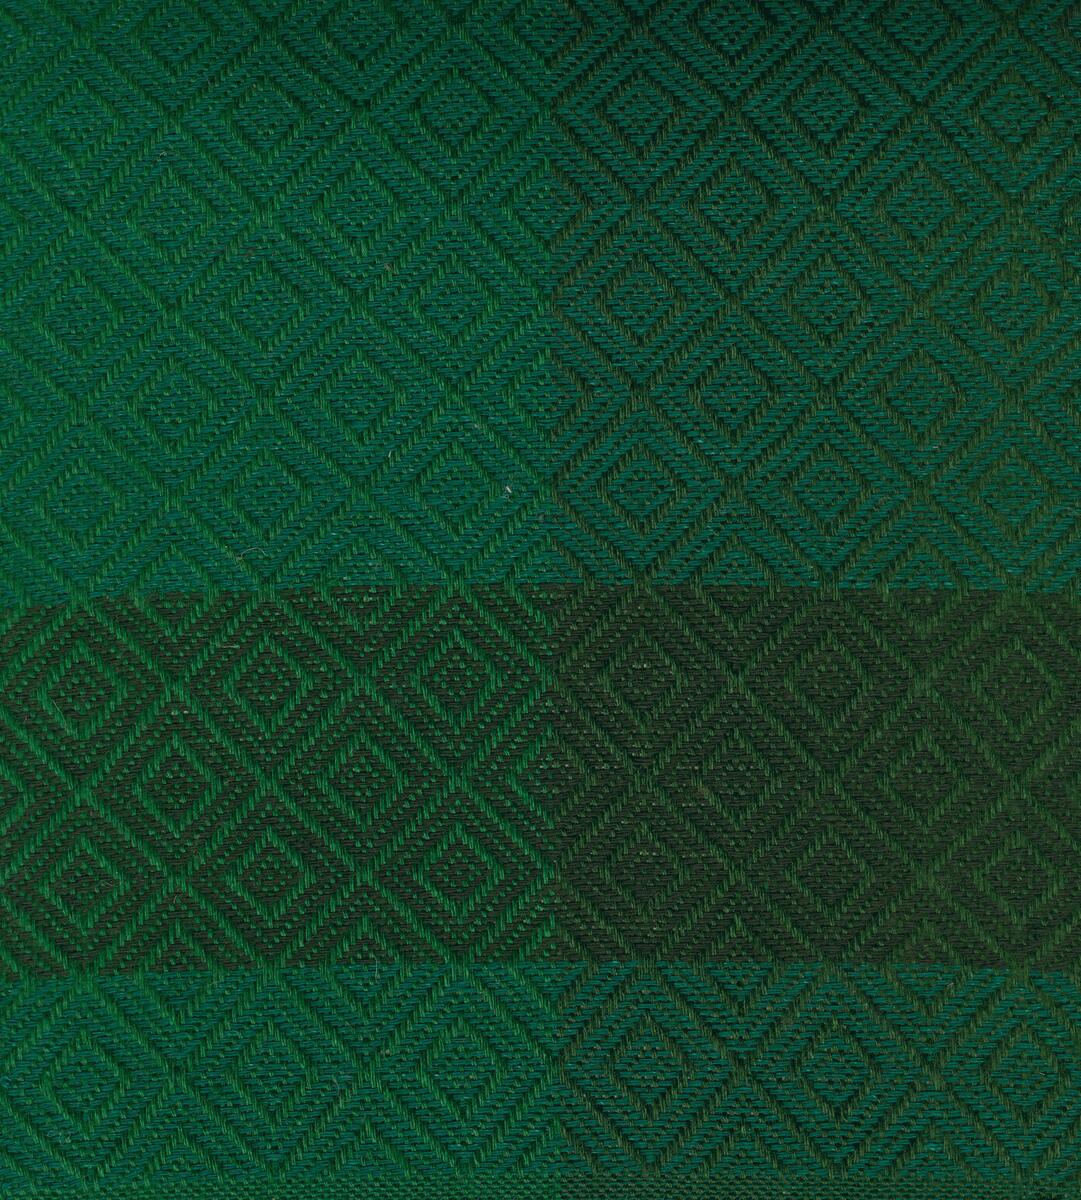 Breda ränder i två nyanser grönt med våffelliknande mönster, tygprover i nio färgställningar, 35x29 cm.Garnprover. 4 montage, noteringar.